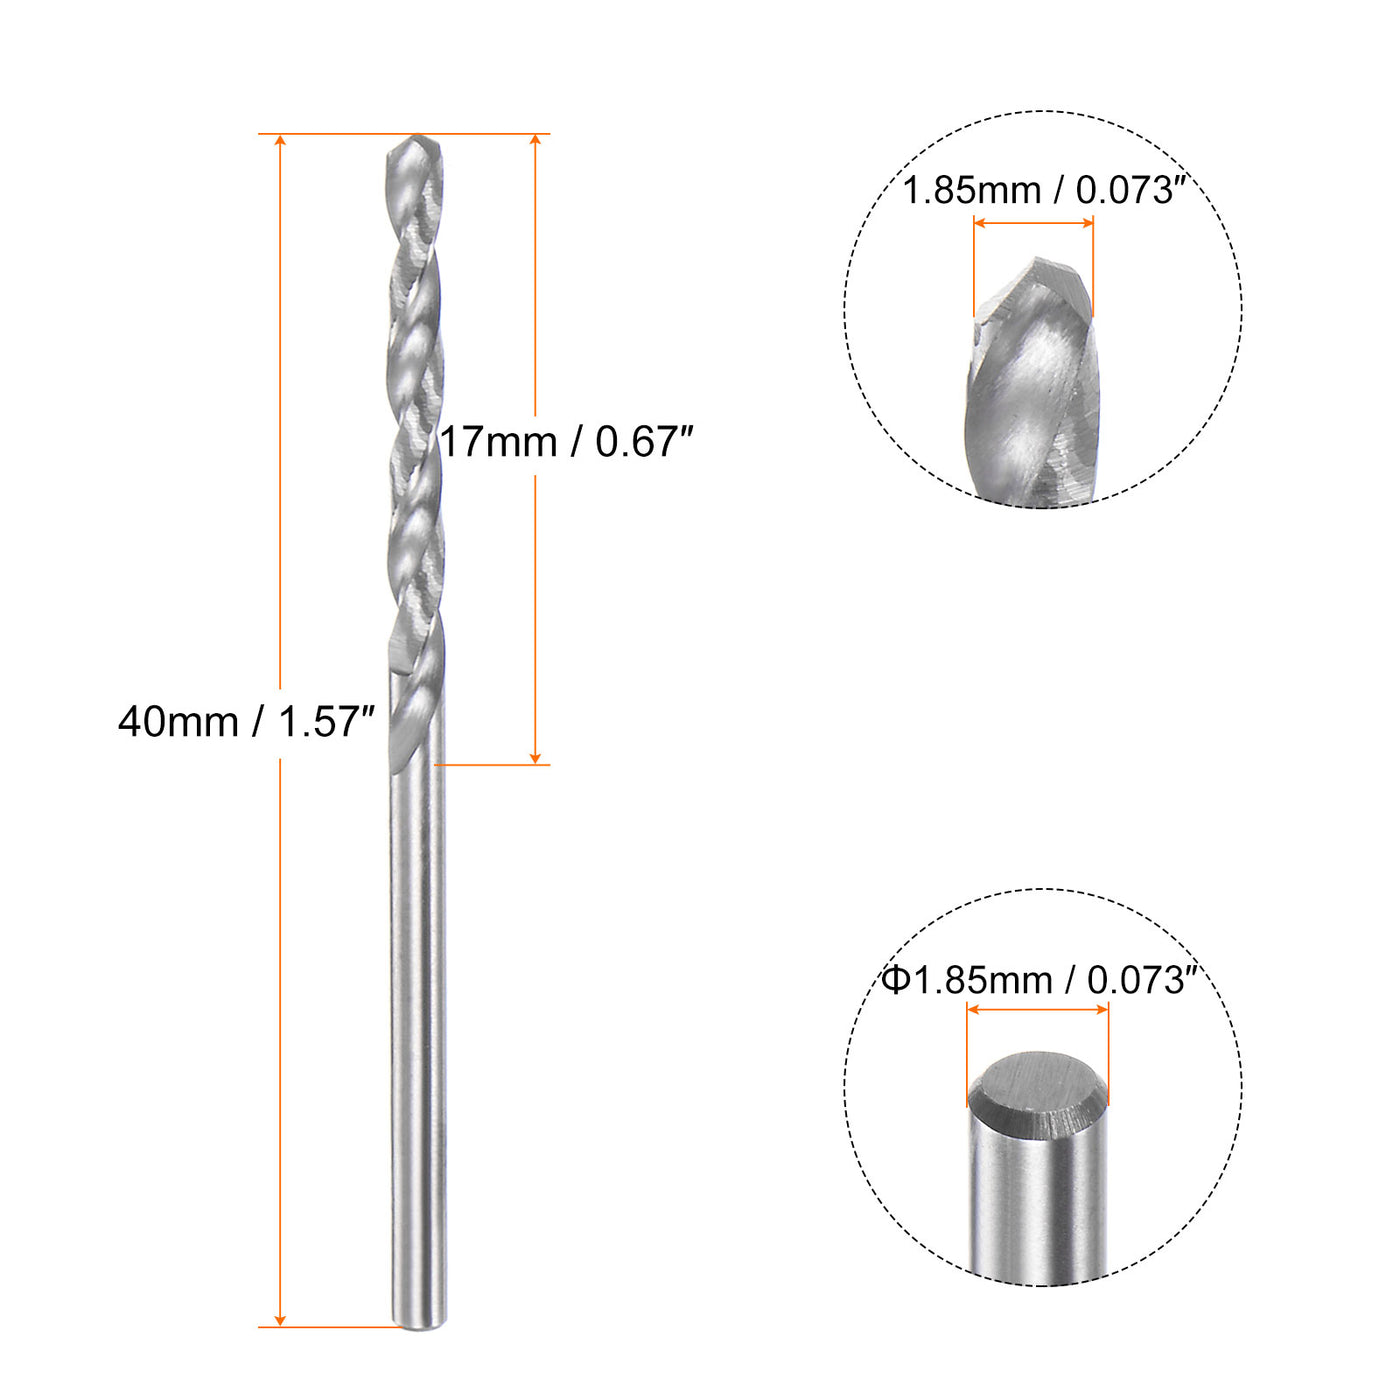 Harfington 1.85mm C3/K10 Tungsten Carbide Precision Straight Shank Twist Drill Bit